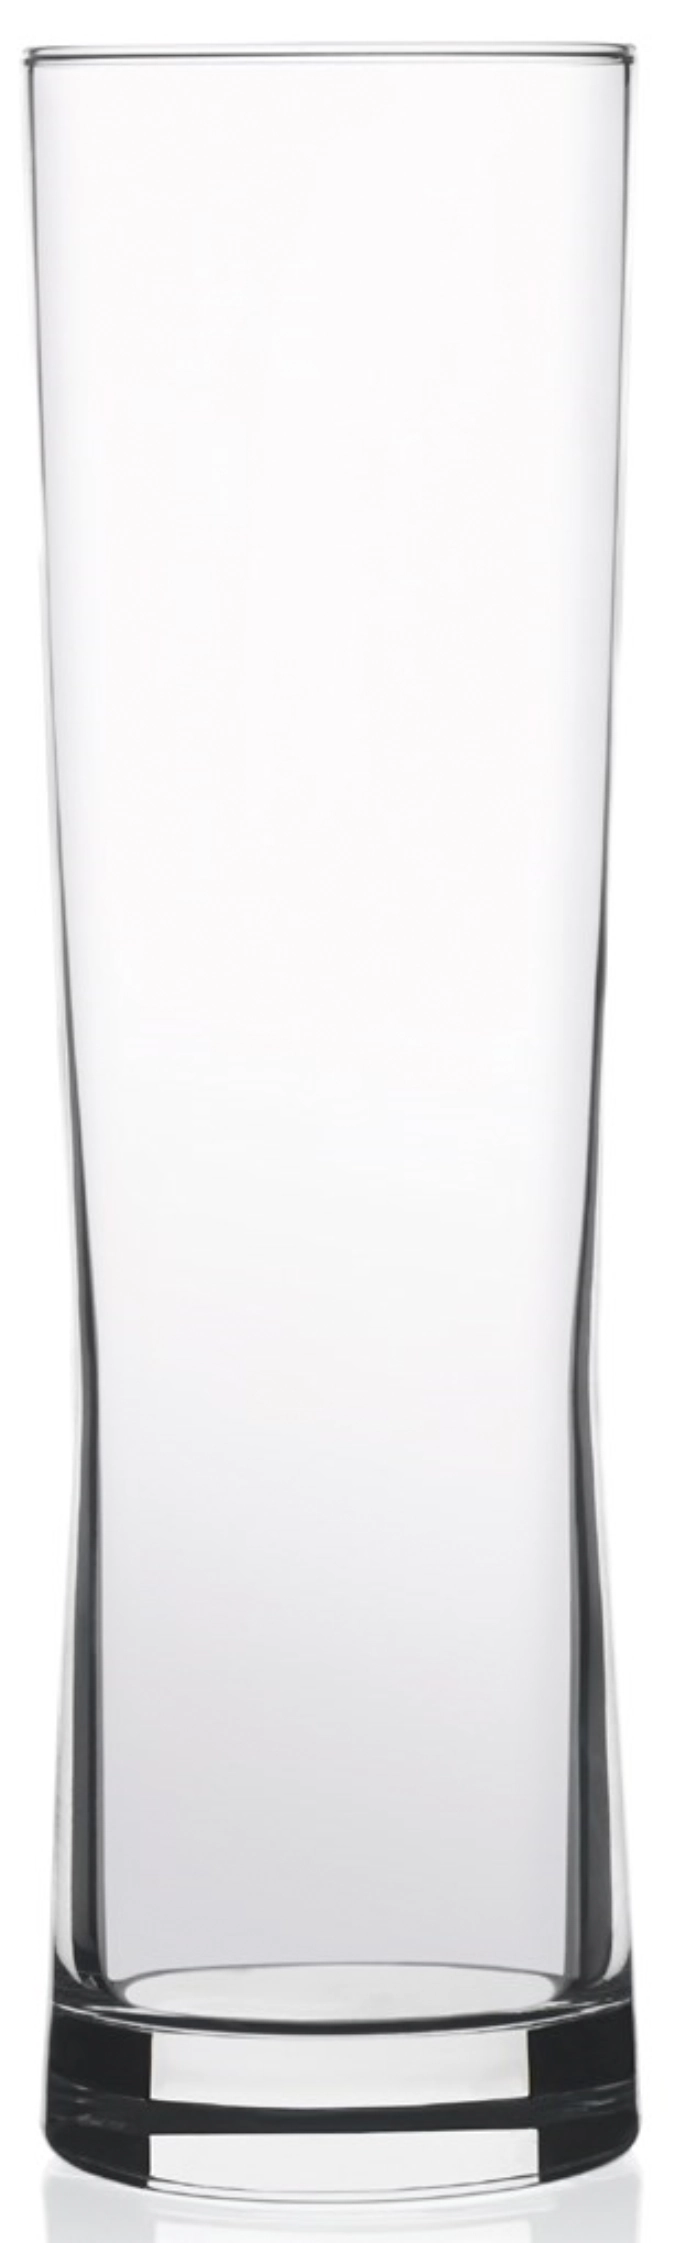 Fresh Glas-Becher 31cl, 2.5dl. /0/ 18.9cm